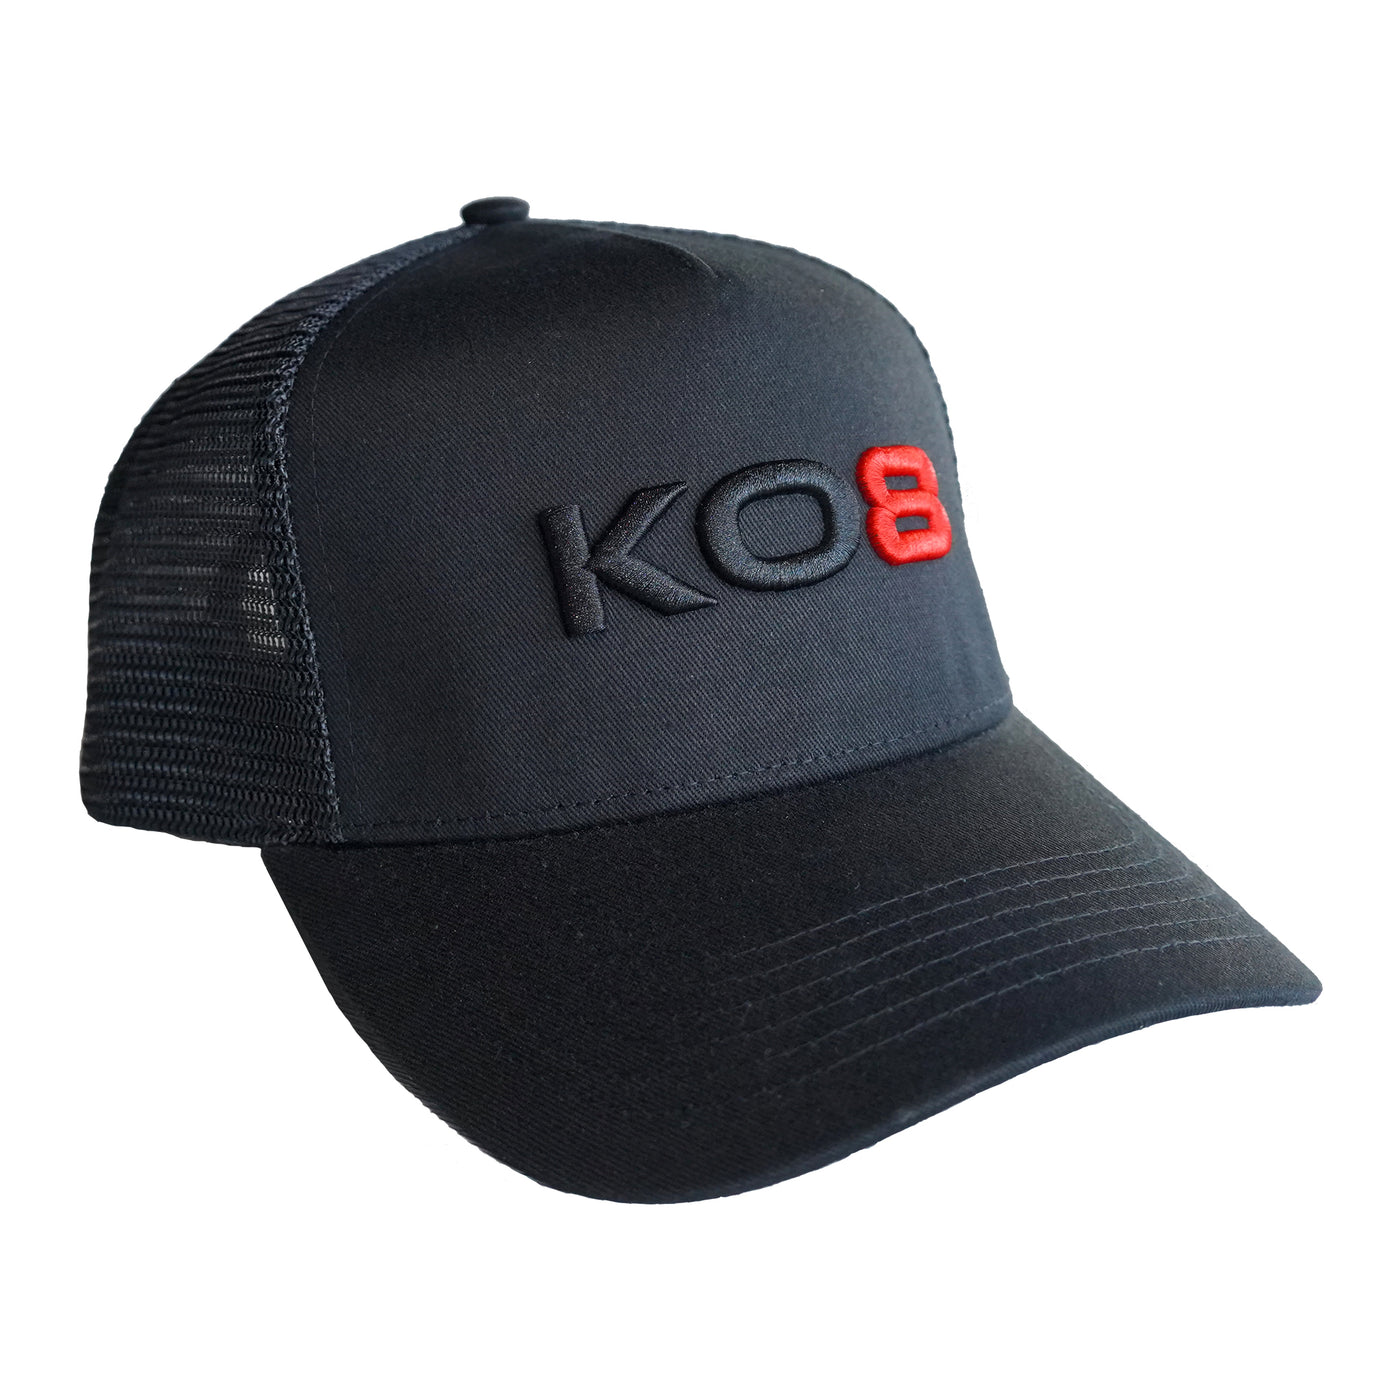 KO8 Trucker Cap